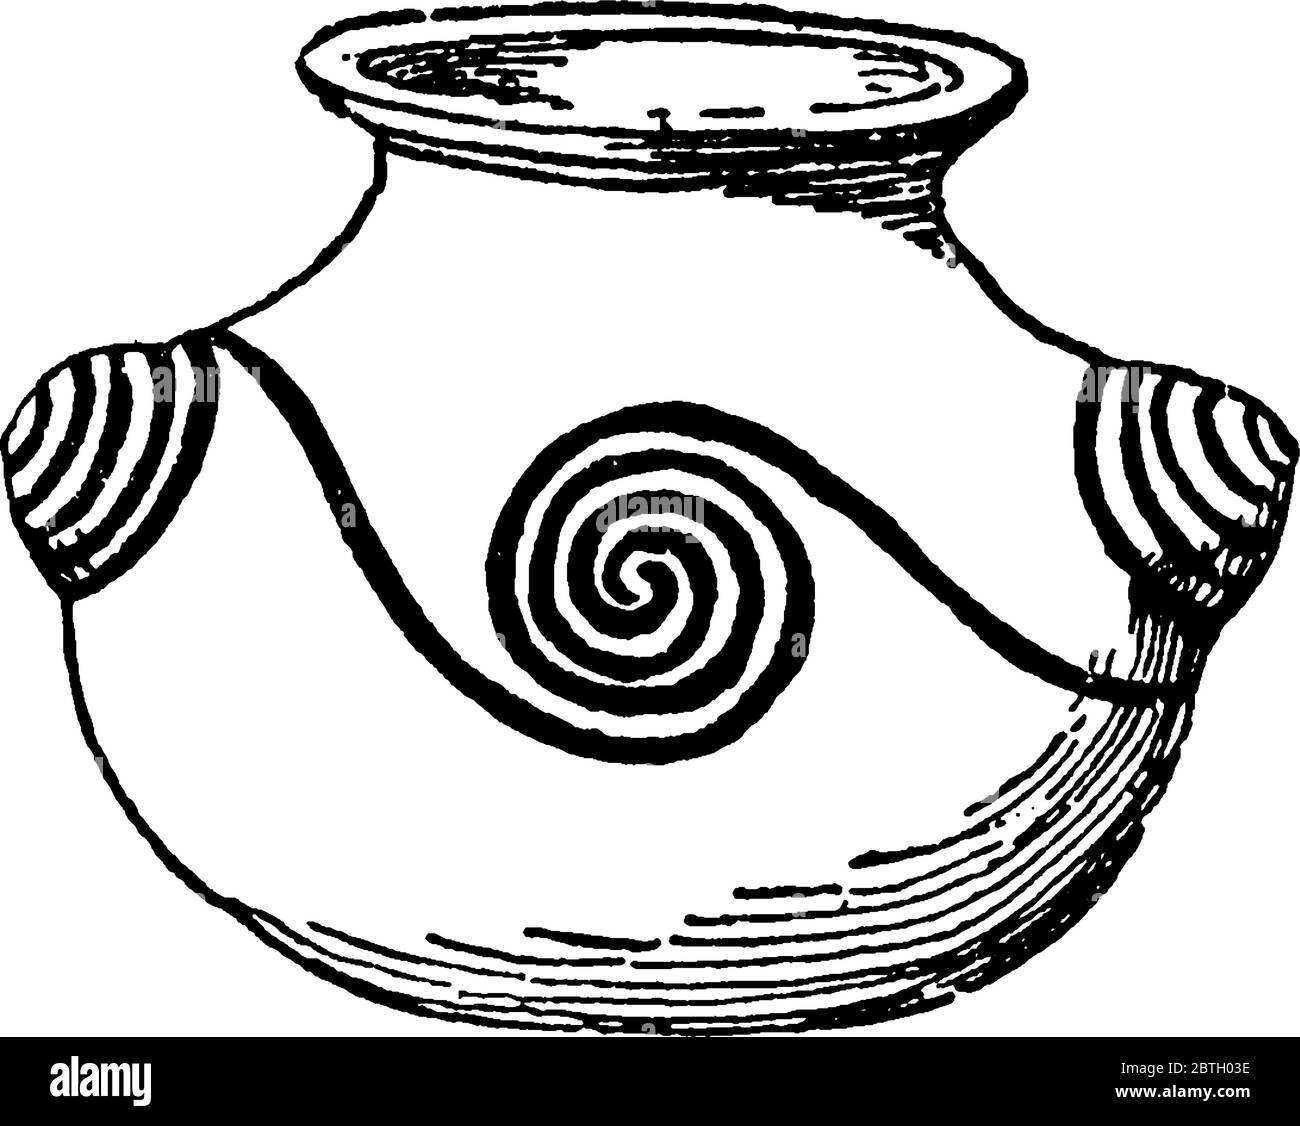 È un'immagine di Pueblo vaso con disegno a spirale, vaso mostrato con disegno su esso, disegno a spirale fatto su disegno a linea di itvintage o illustrazione di incisione, Illustrazione Vettoriale